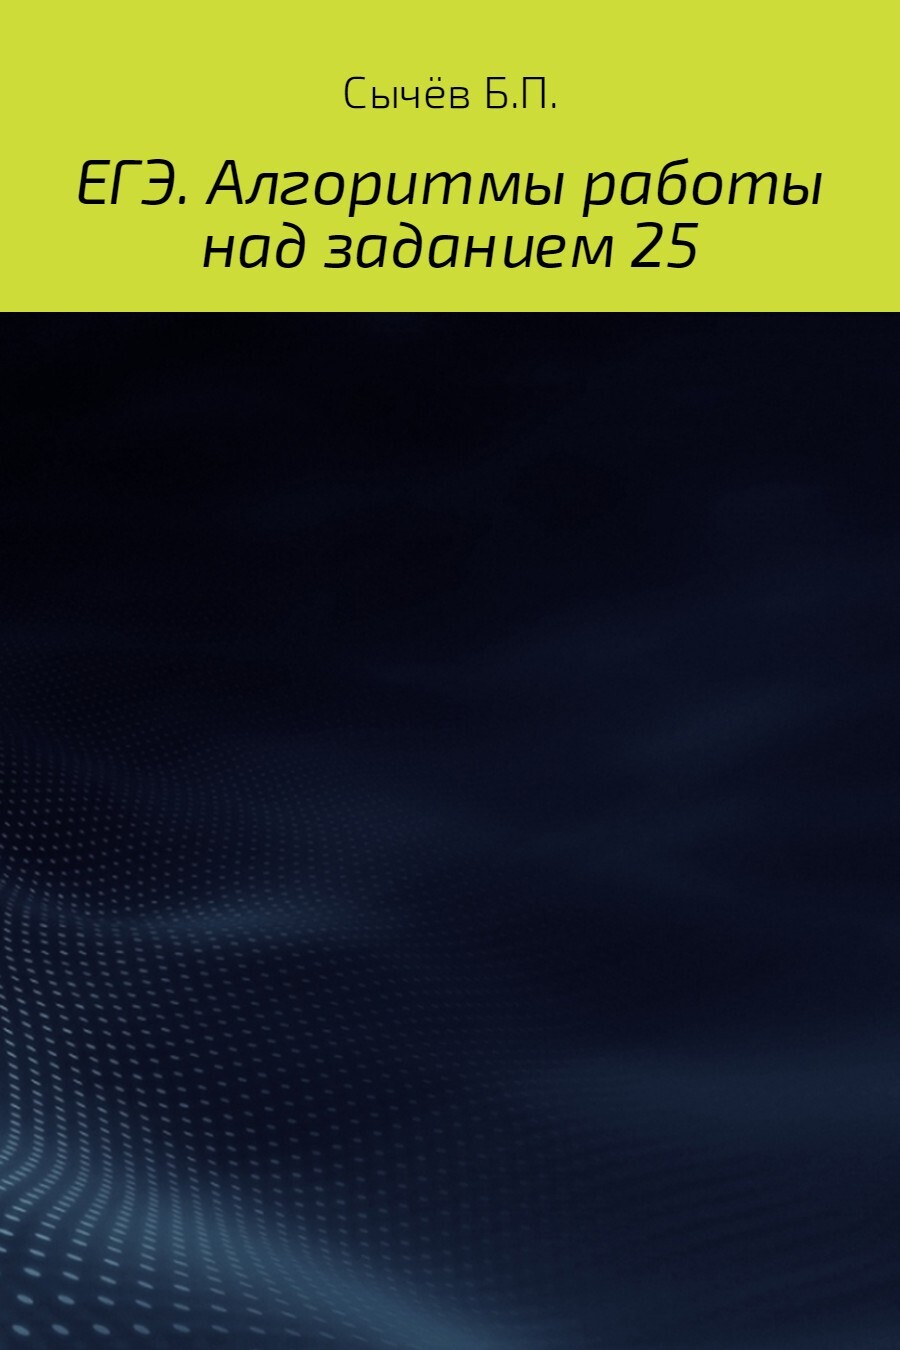 Книга Алгоритмы работы над заданием 26 (типа С) из серии , созданная Бронислав Сычёв, может относится к жанру Прочая образовательная литература, Учебная литература. Стоимость книги Алгоритмы работы над заданием 26 (типа С)  с идентификатором 25235788 составляет 299.00 руб.